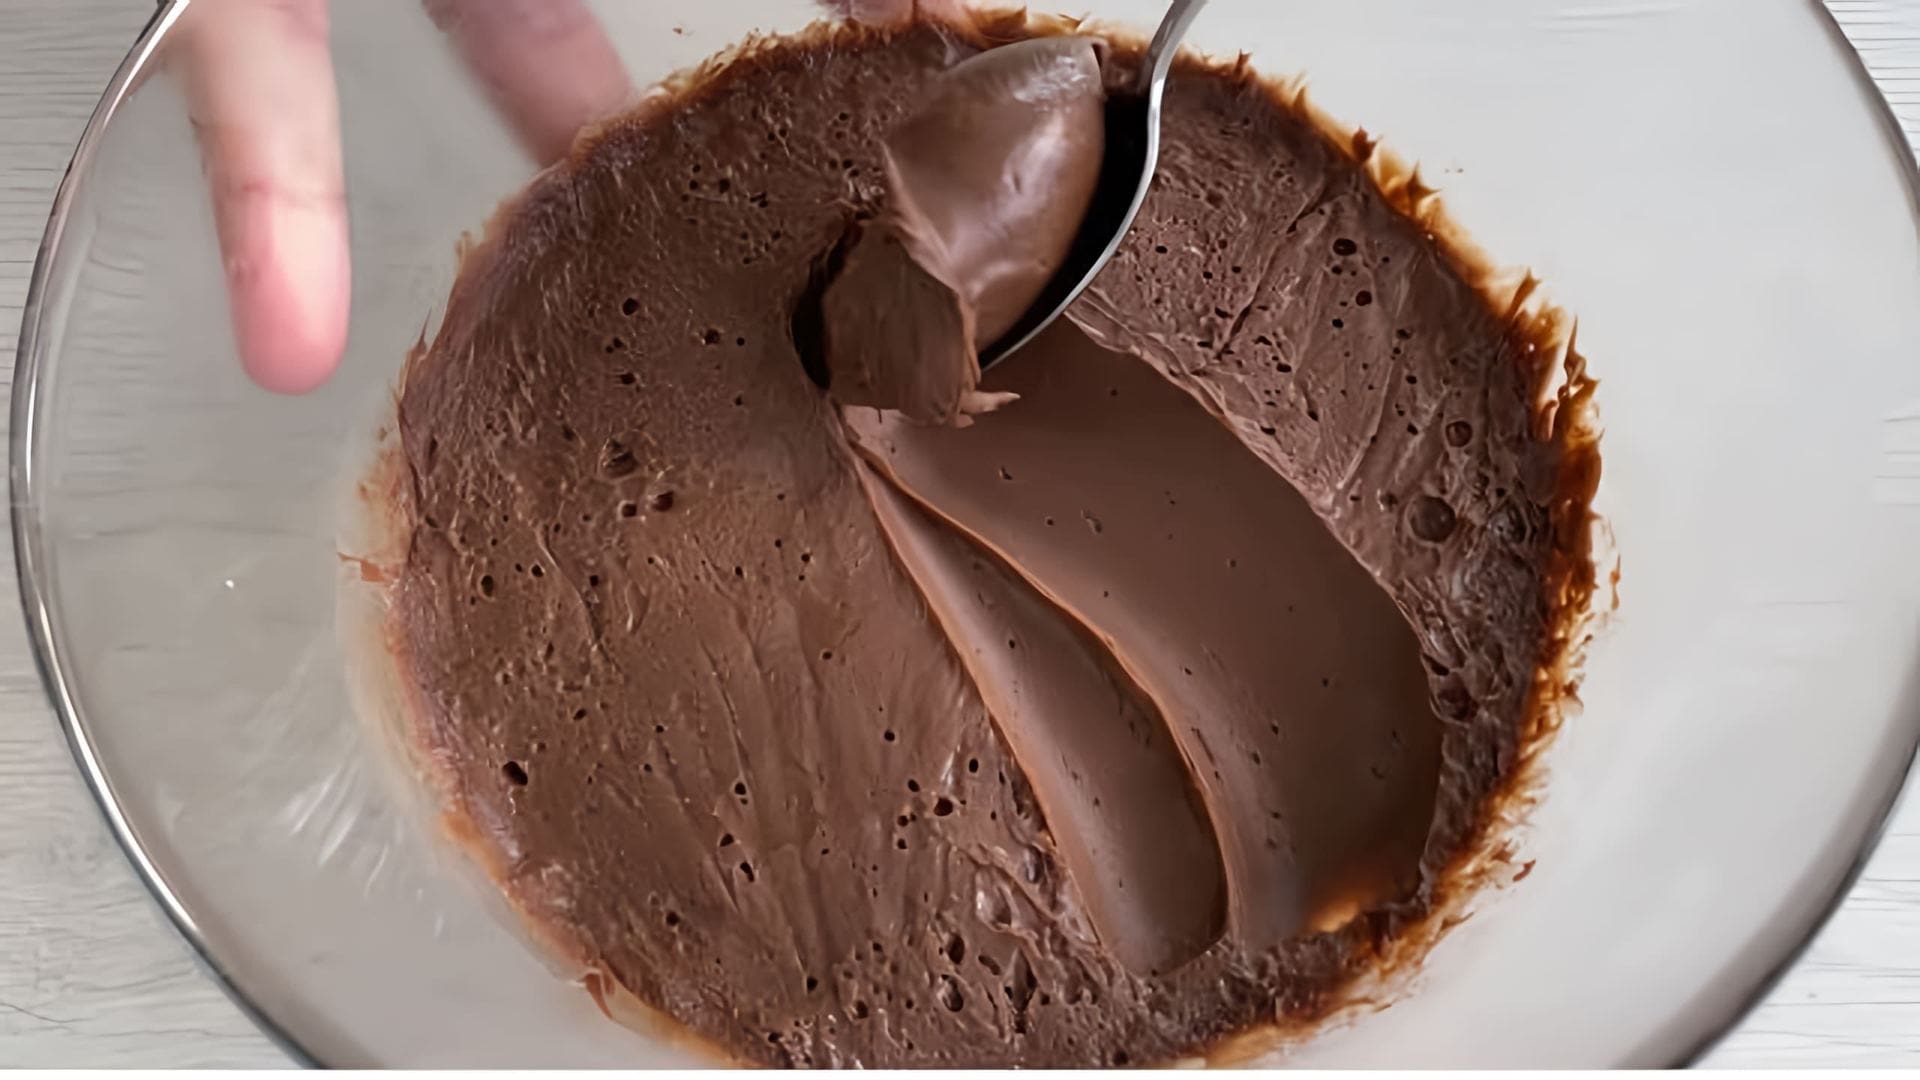 В этом видео демонстрируется процесс приготовления шоколадного ганаша - крема, который используется для начинки тортов, капкейков, макарон и других десертов